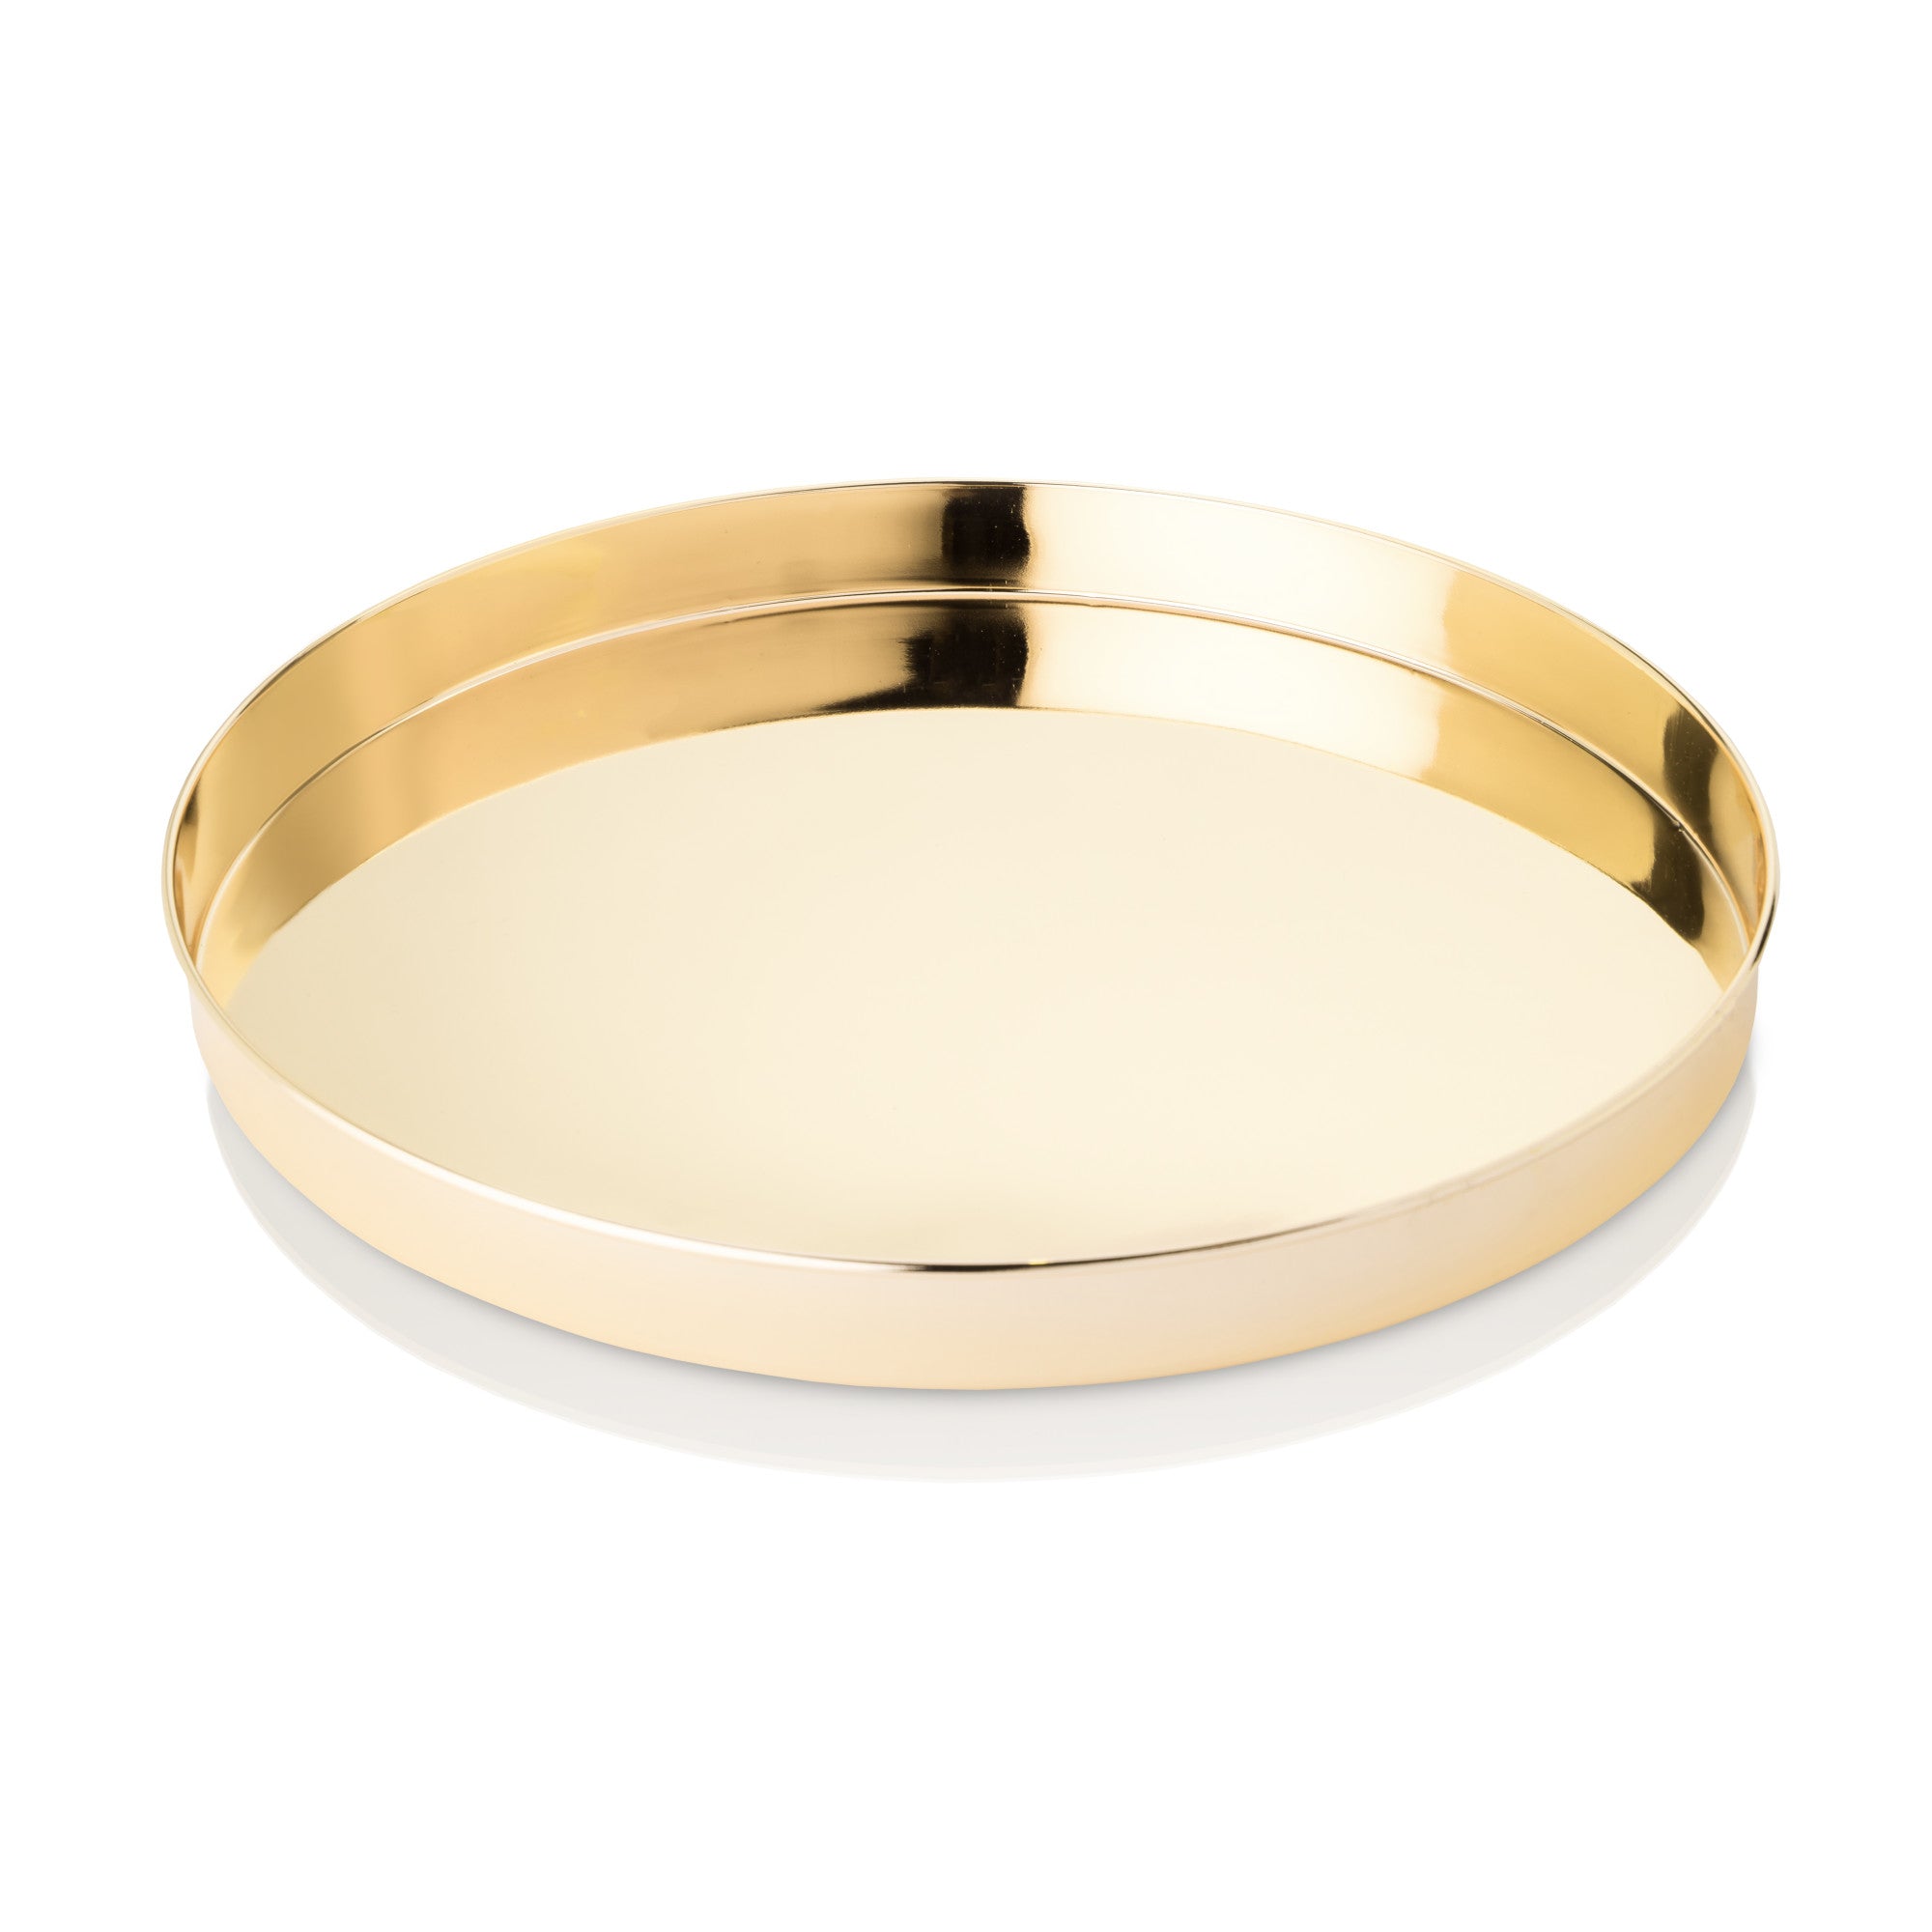 Round Gold Serving Tray by Viski® (5204) Serveware Viski